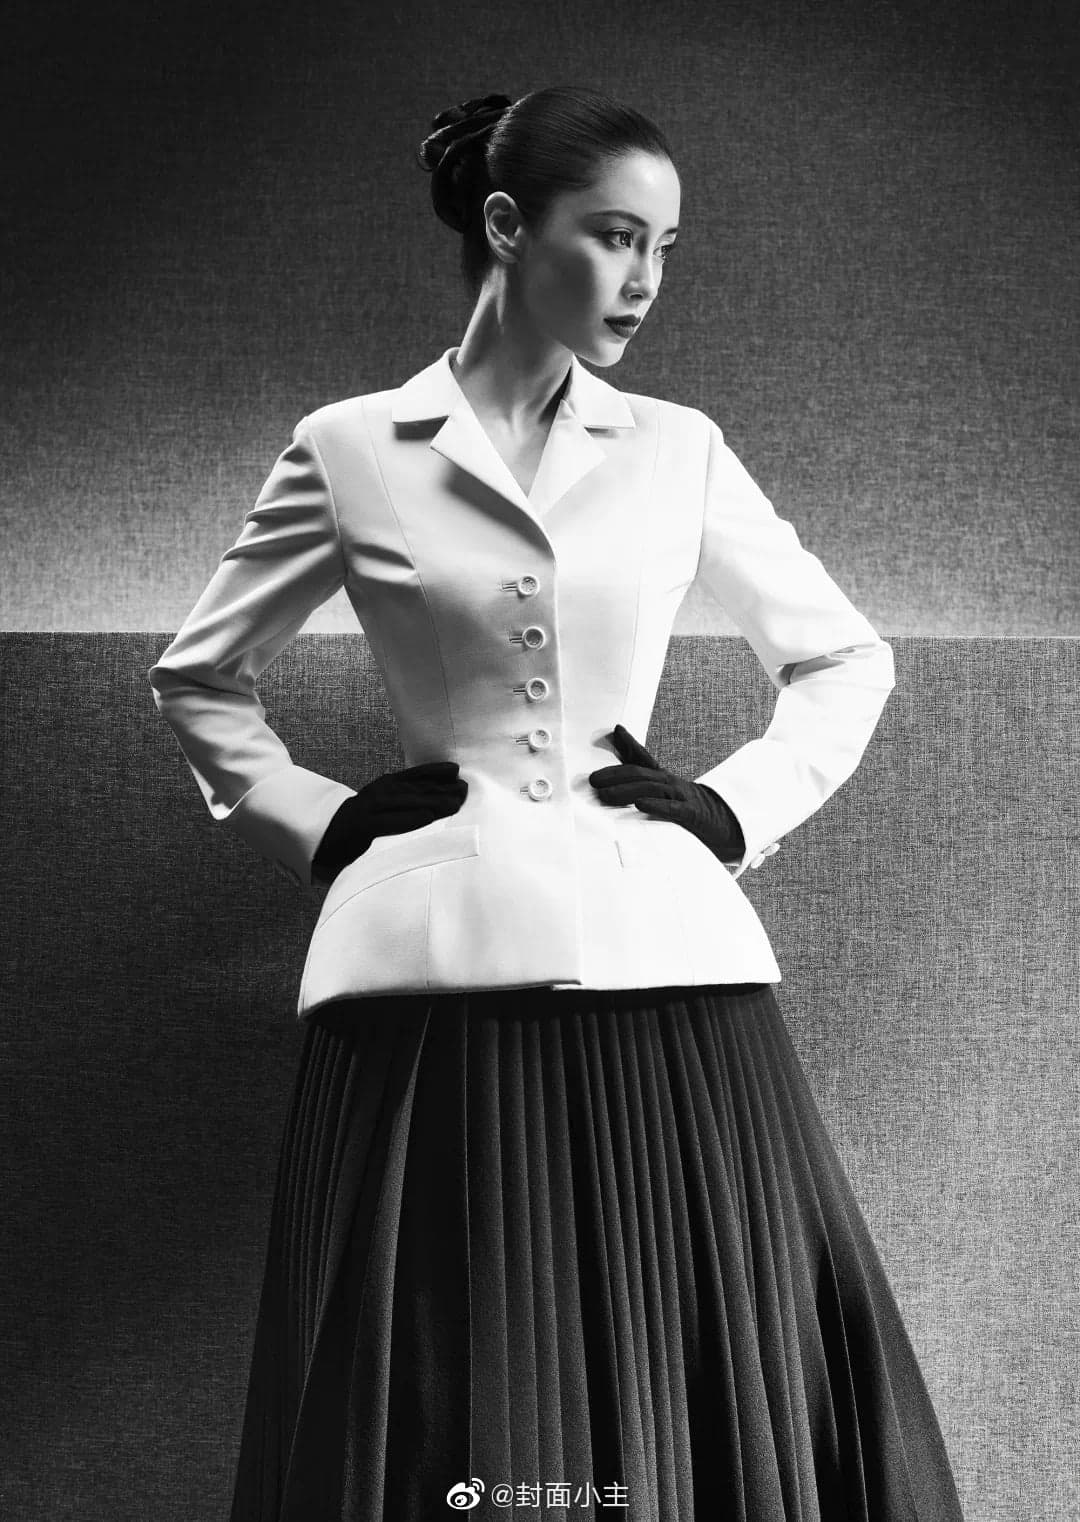 Dior  la success story de la mythique veste Bar de 1947 à aujourdhui   Vogue France